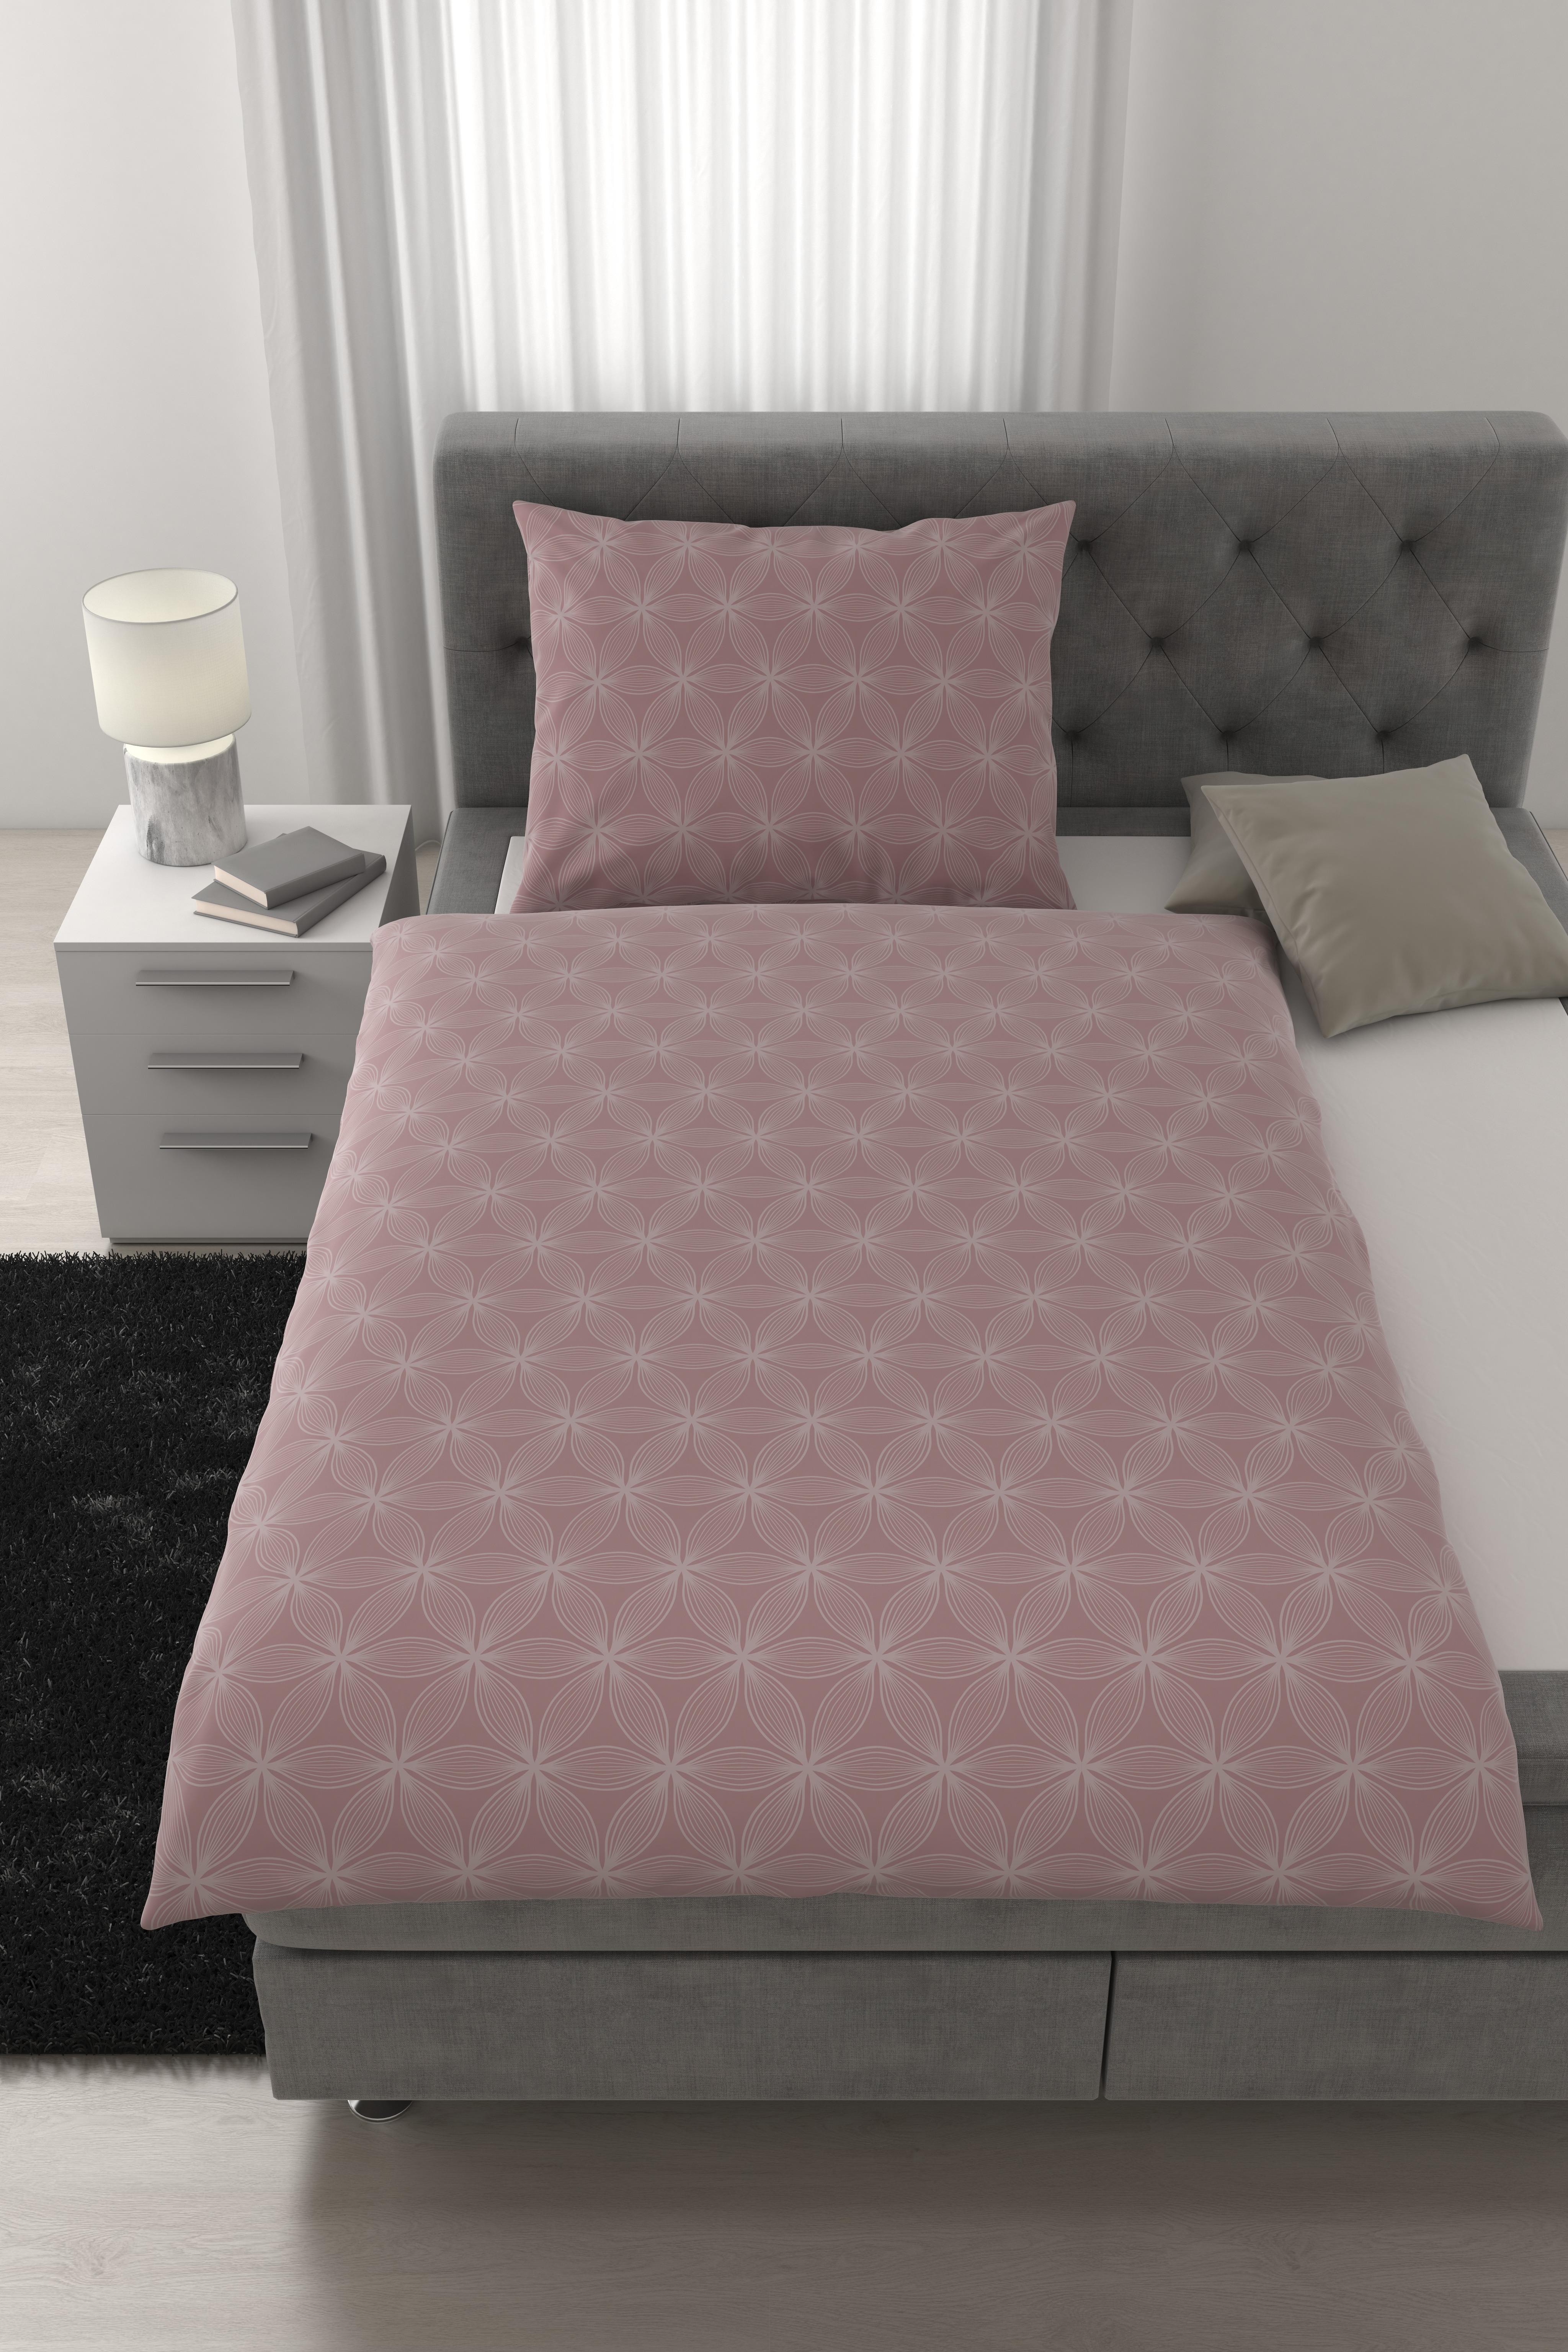 Lenjerie de pat Alex Design - lila, Modern, textil (140/200cm) - Premium Living